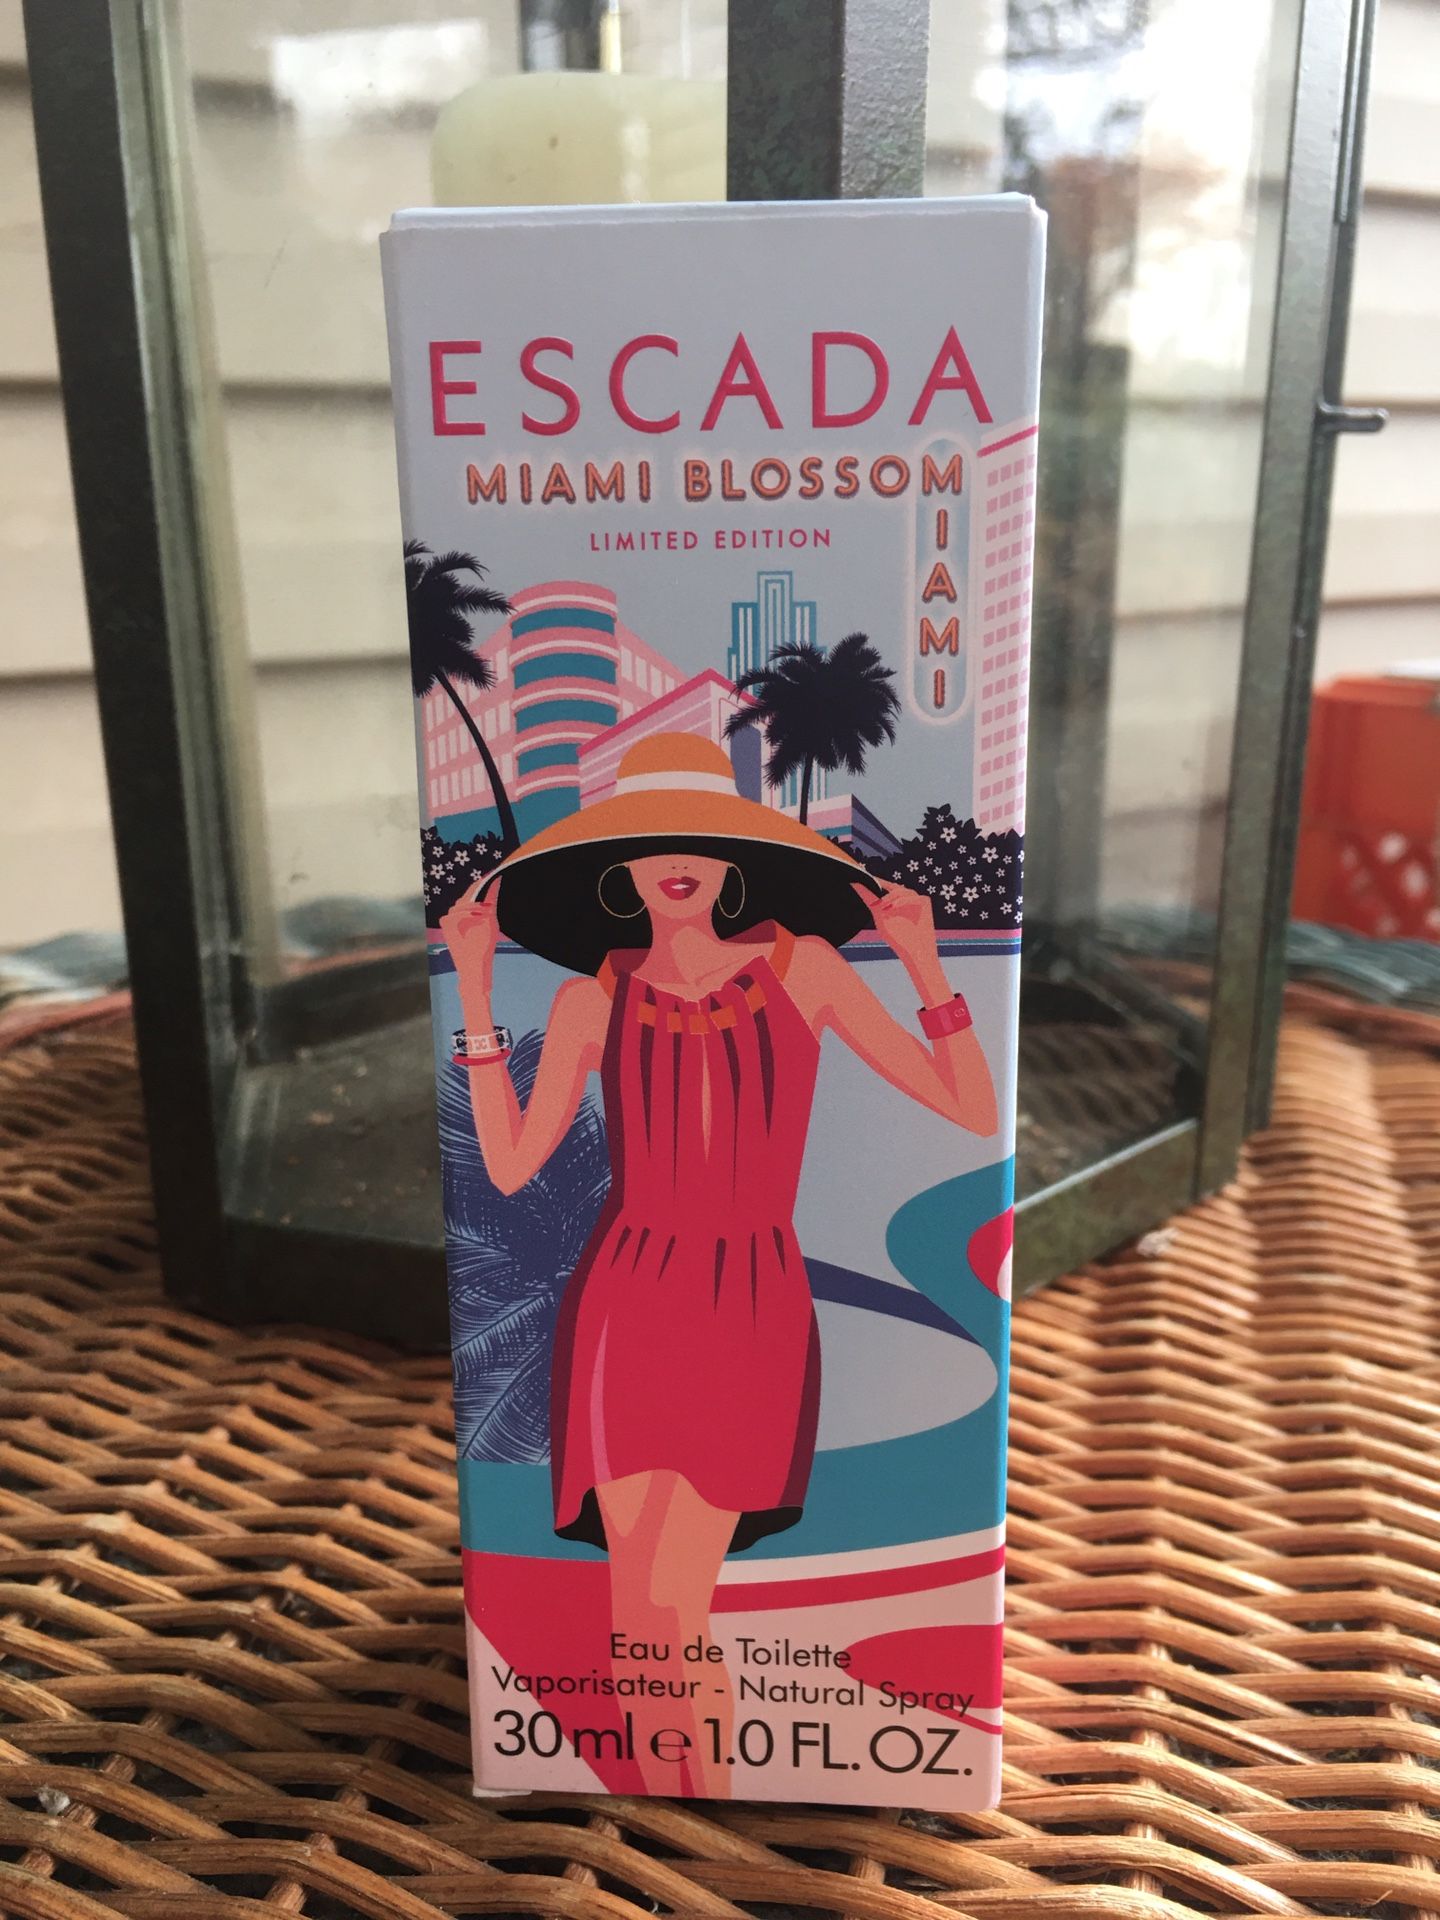 Escada Miami Blossom Limited Edition